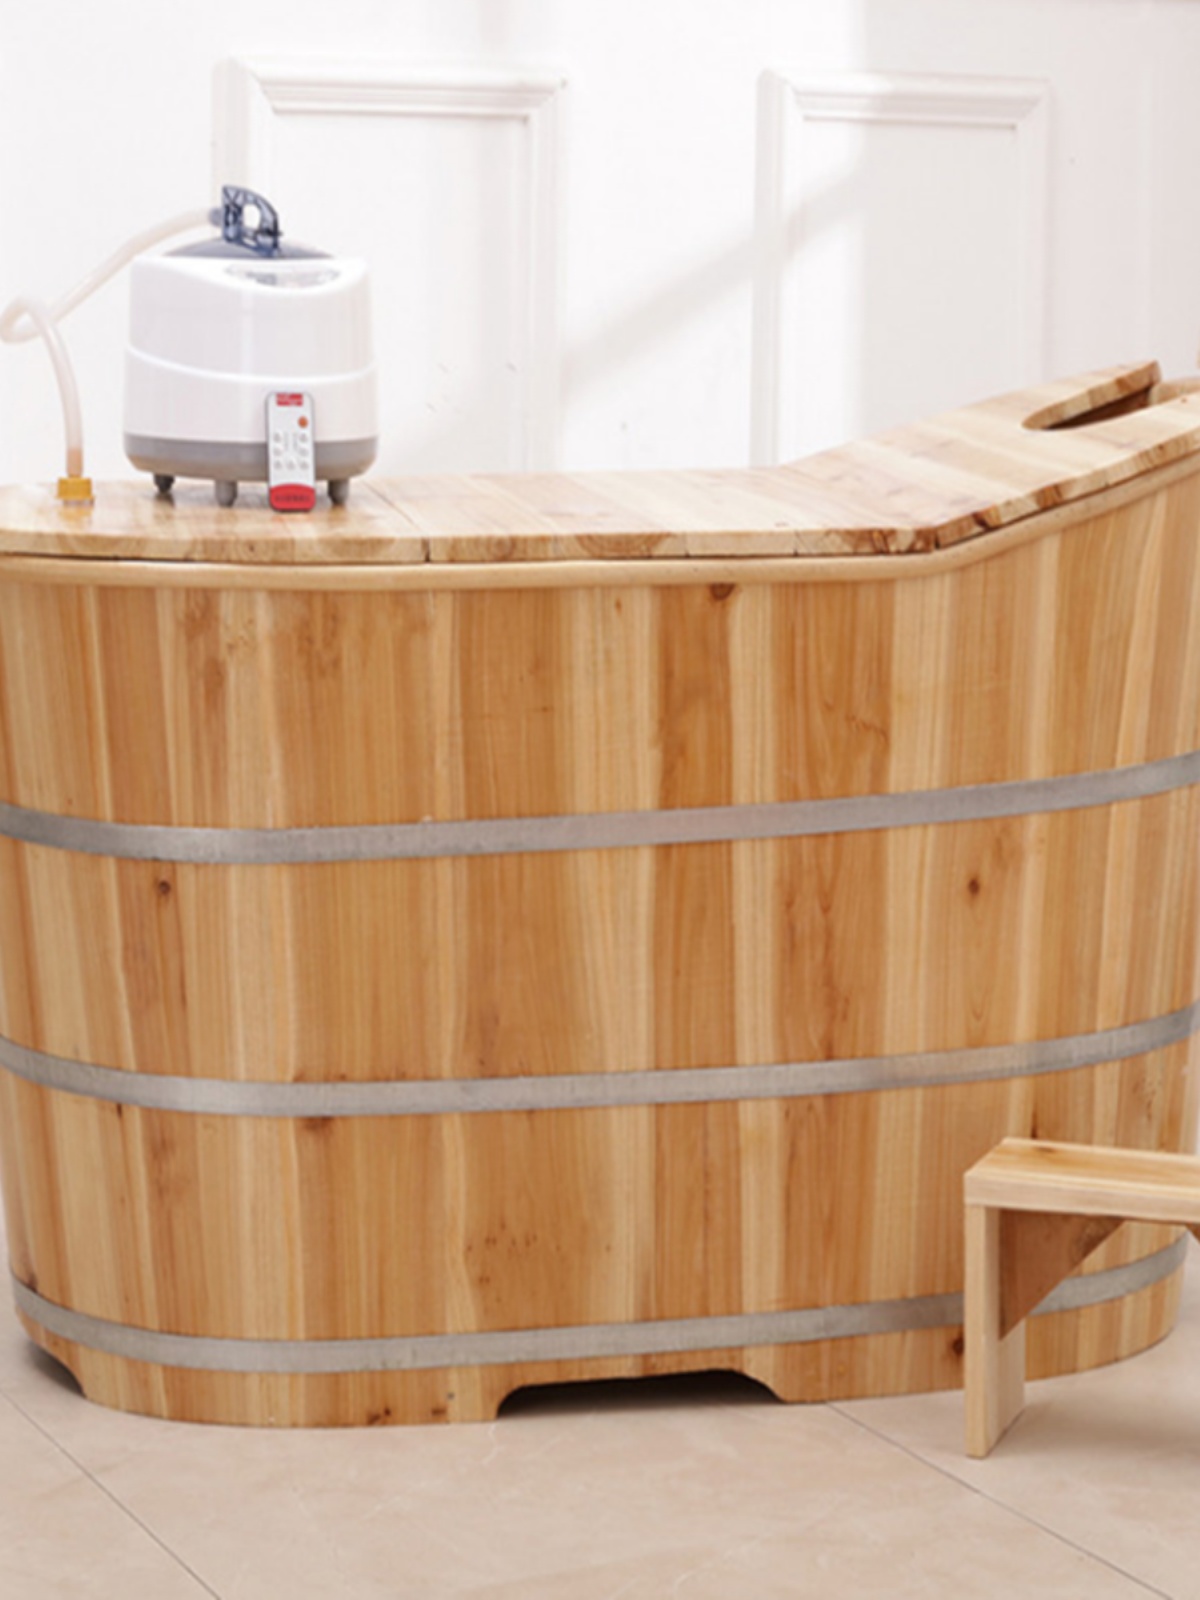 木质泡澡桶小浴室木桶浴桶家用全身大人小户型加热汗蒸熏蒸桶浴缸